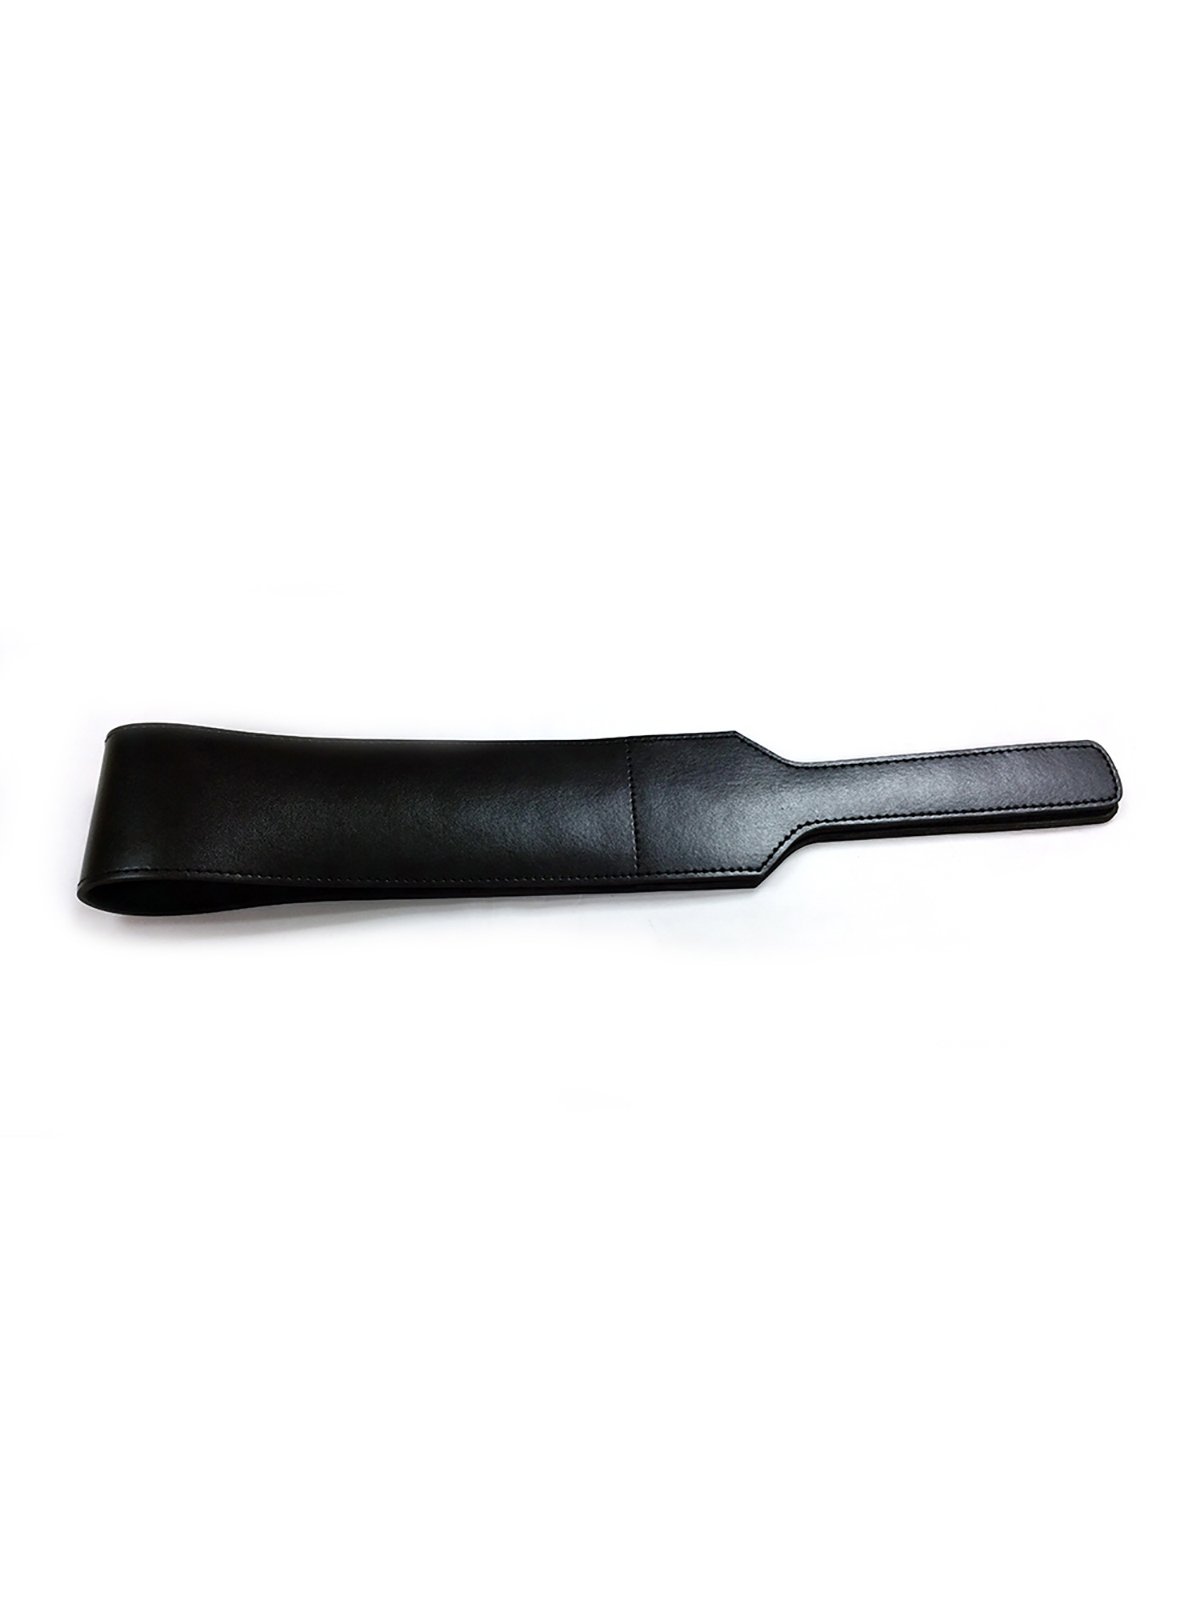 Leather Folded Open Paddle | Black